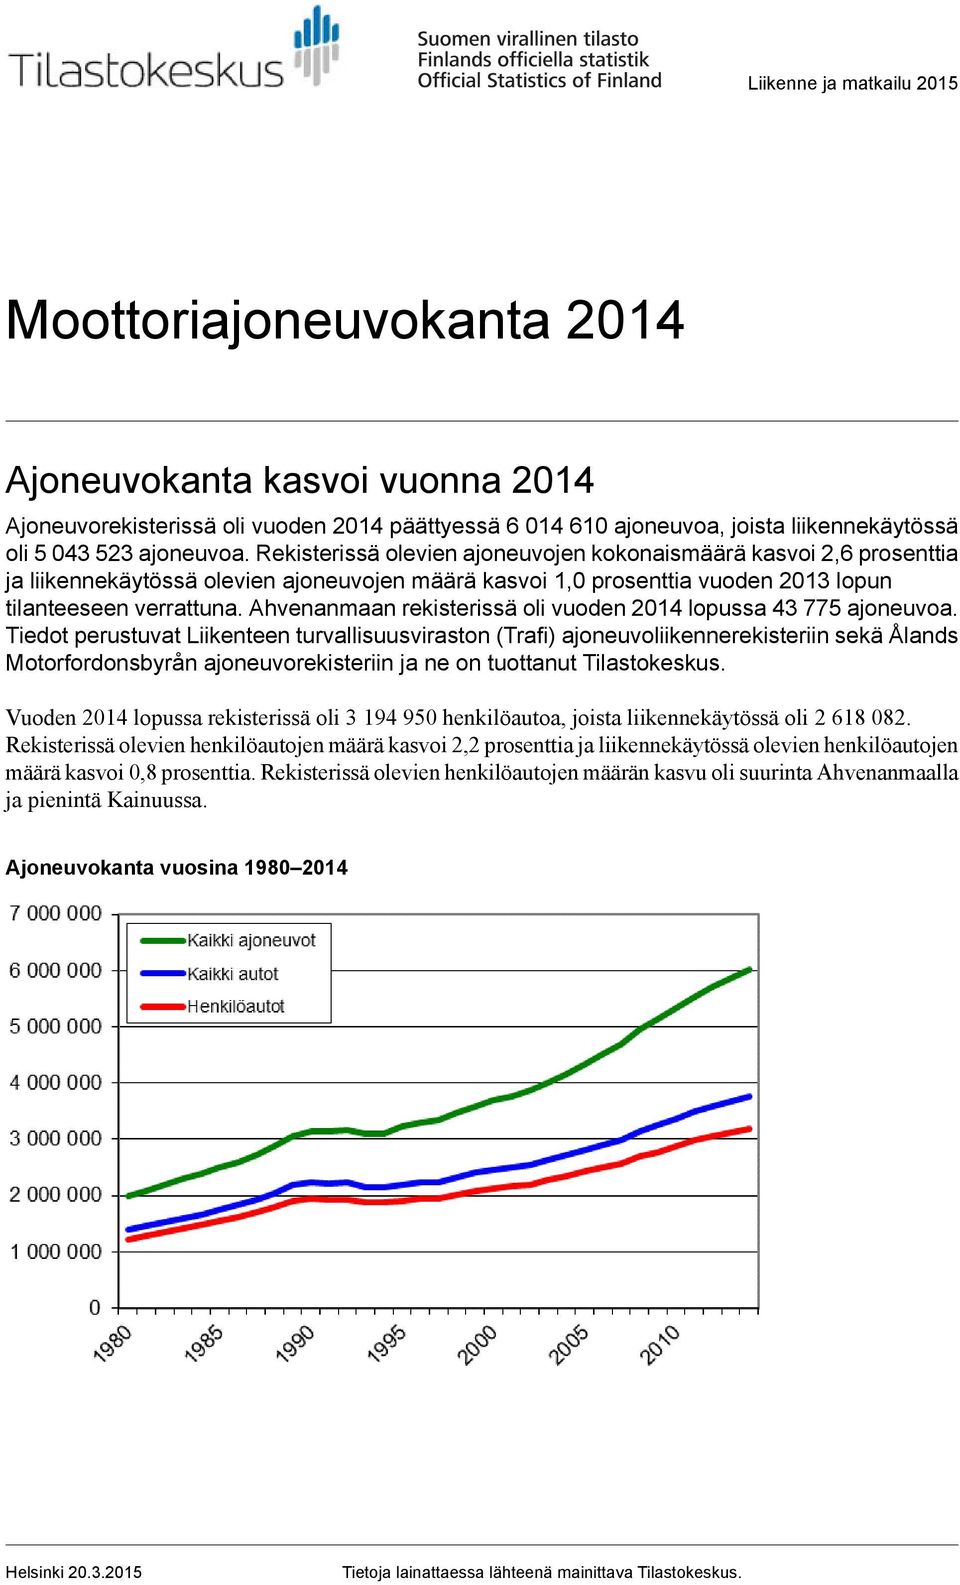 Ahvenanmaan rekisterissä oli vuoden 2014 lopussa 43 775 ajoneuvoa.